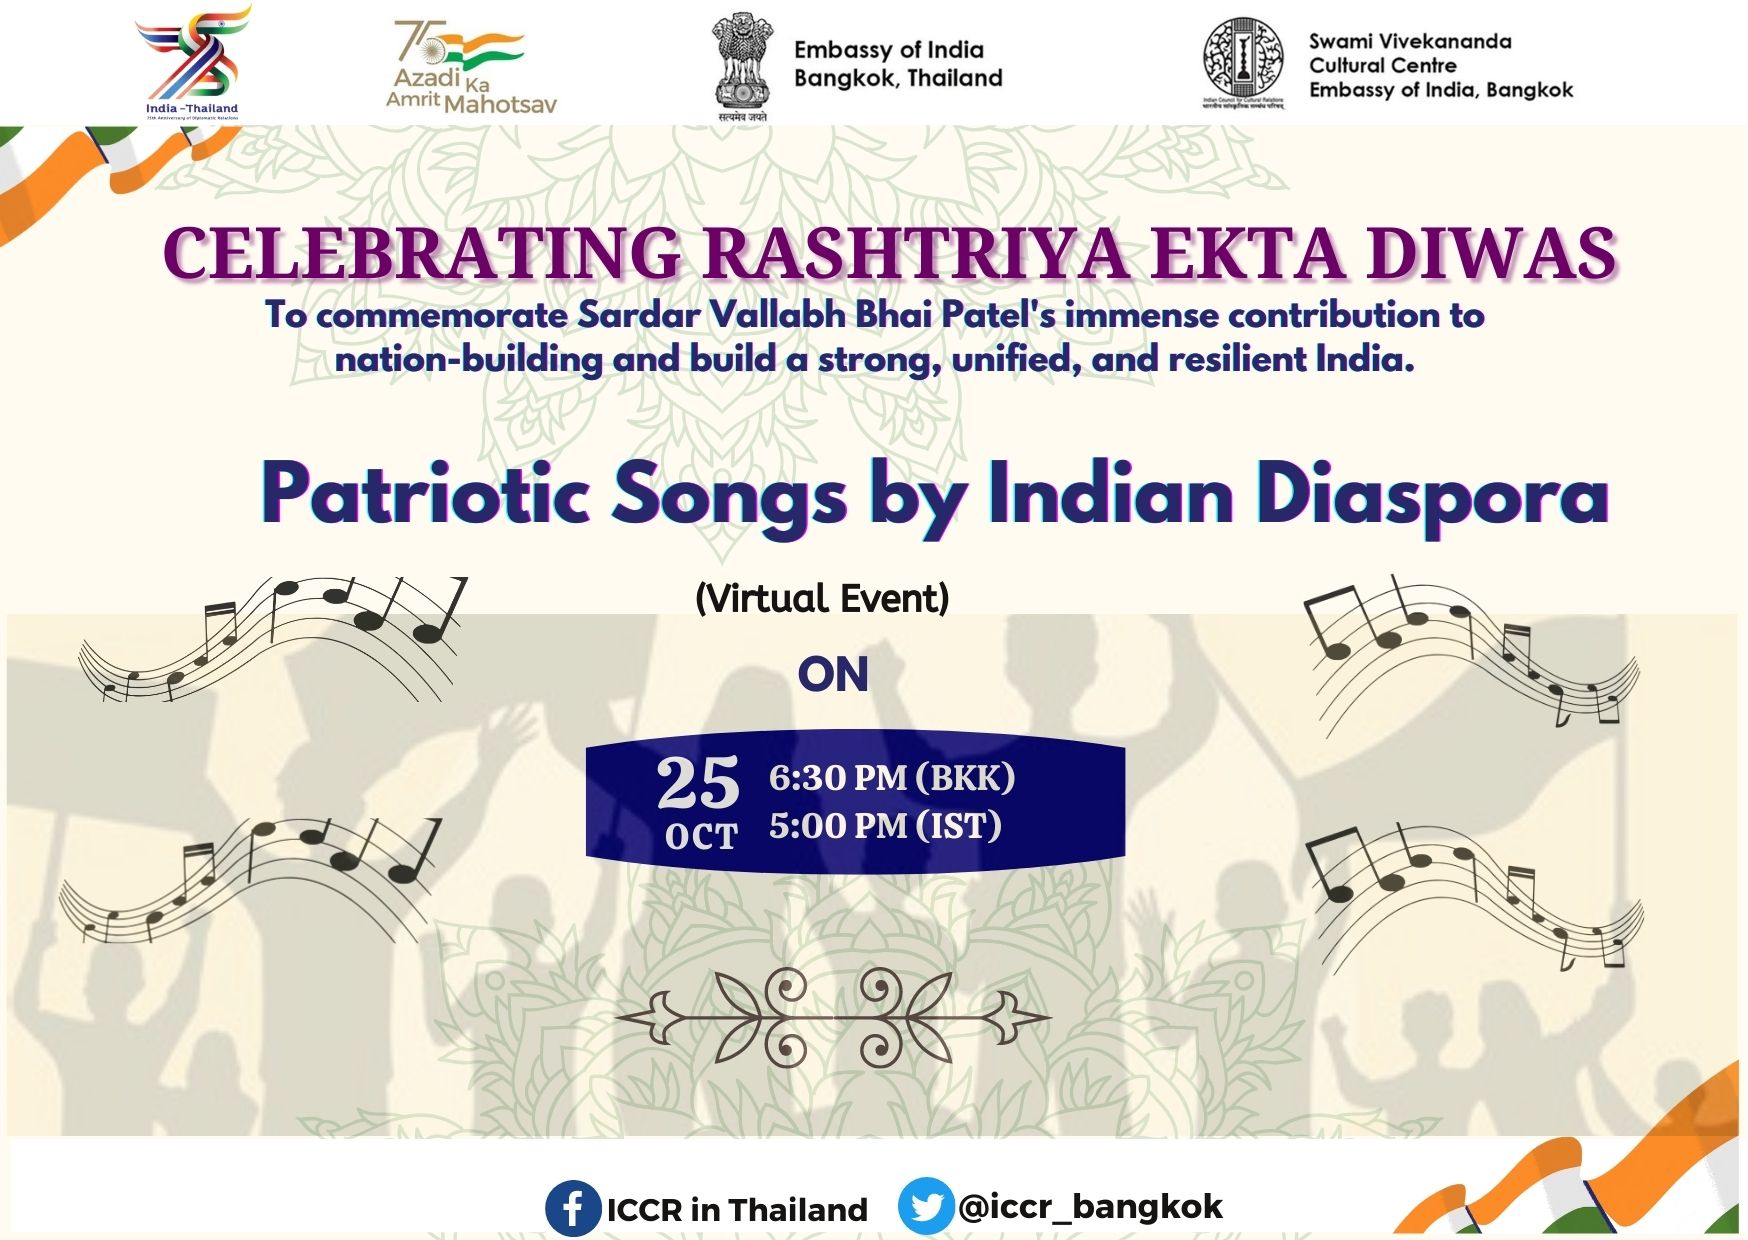 एसवीसीसी 25 से 31 अक्टूबर, 2022 तक राष्ट्रीय एकता दिवस सप्ताह मनाते हुए भारतीय डायस्पोरा द्वारा देशभक्ति गीत प्रस्तुत करता है।